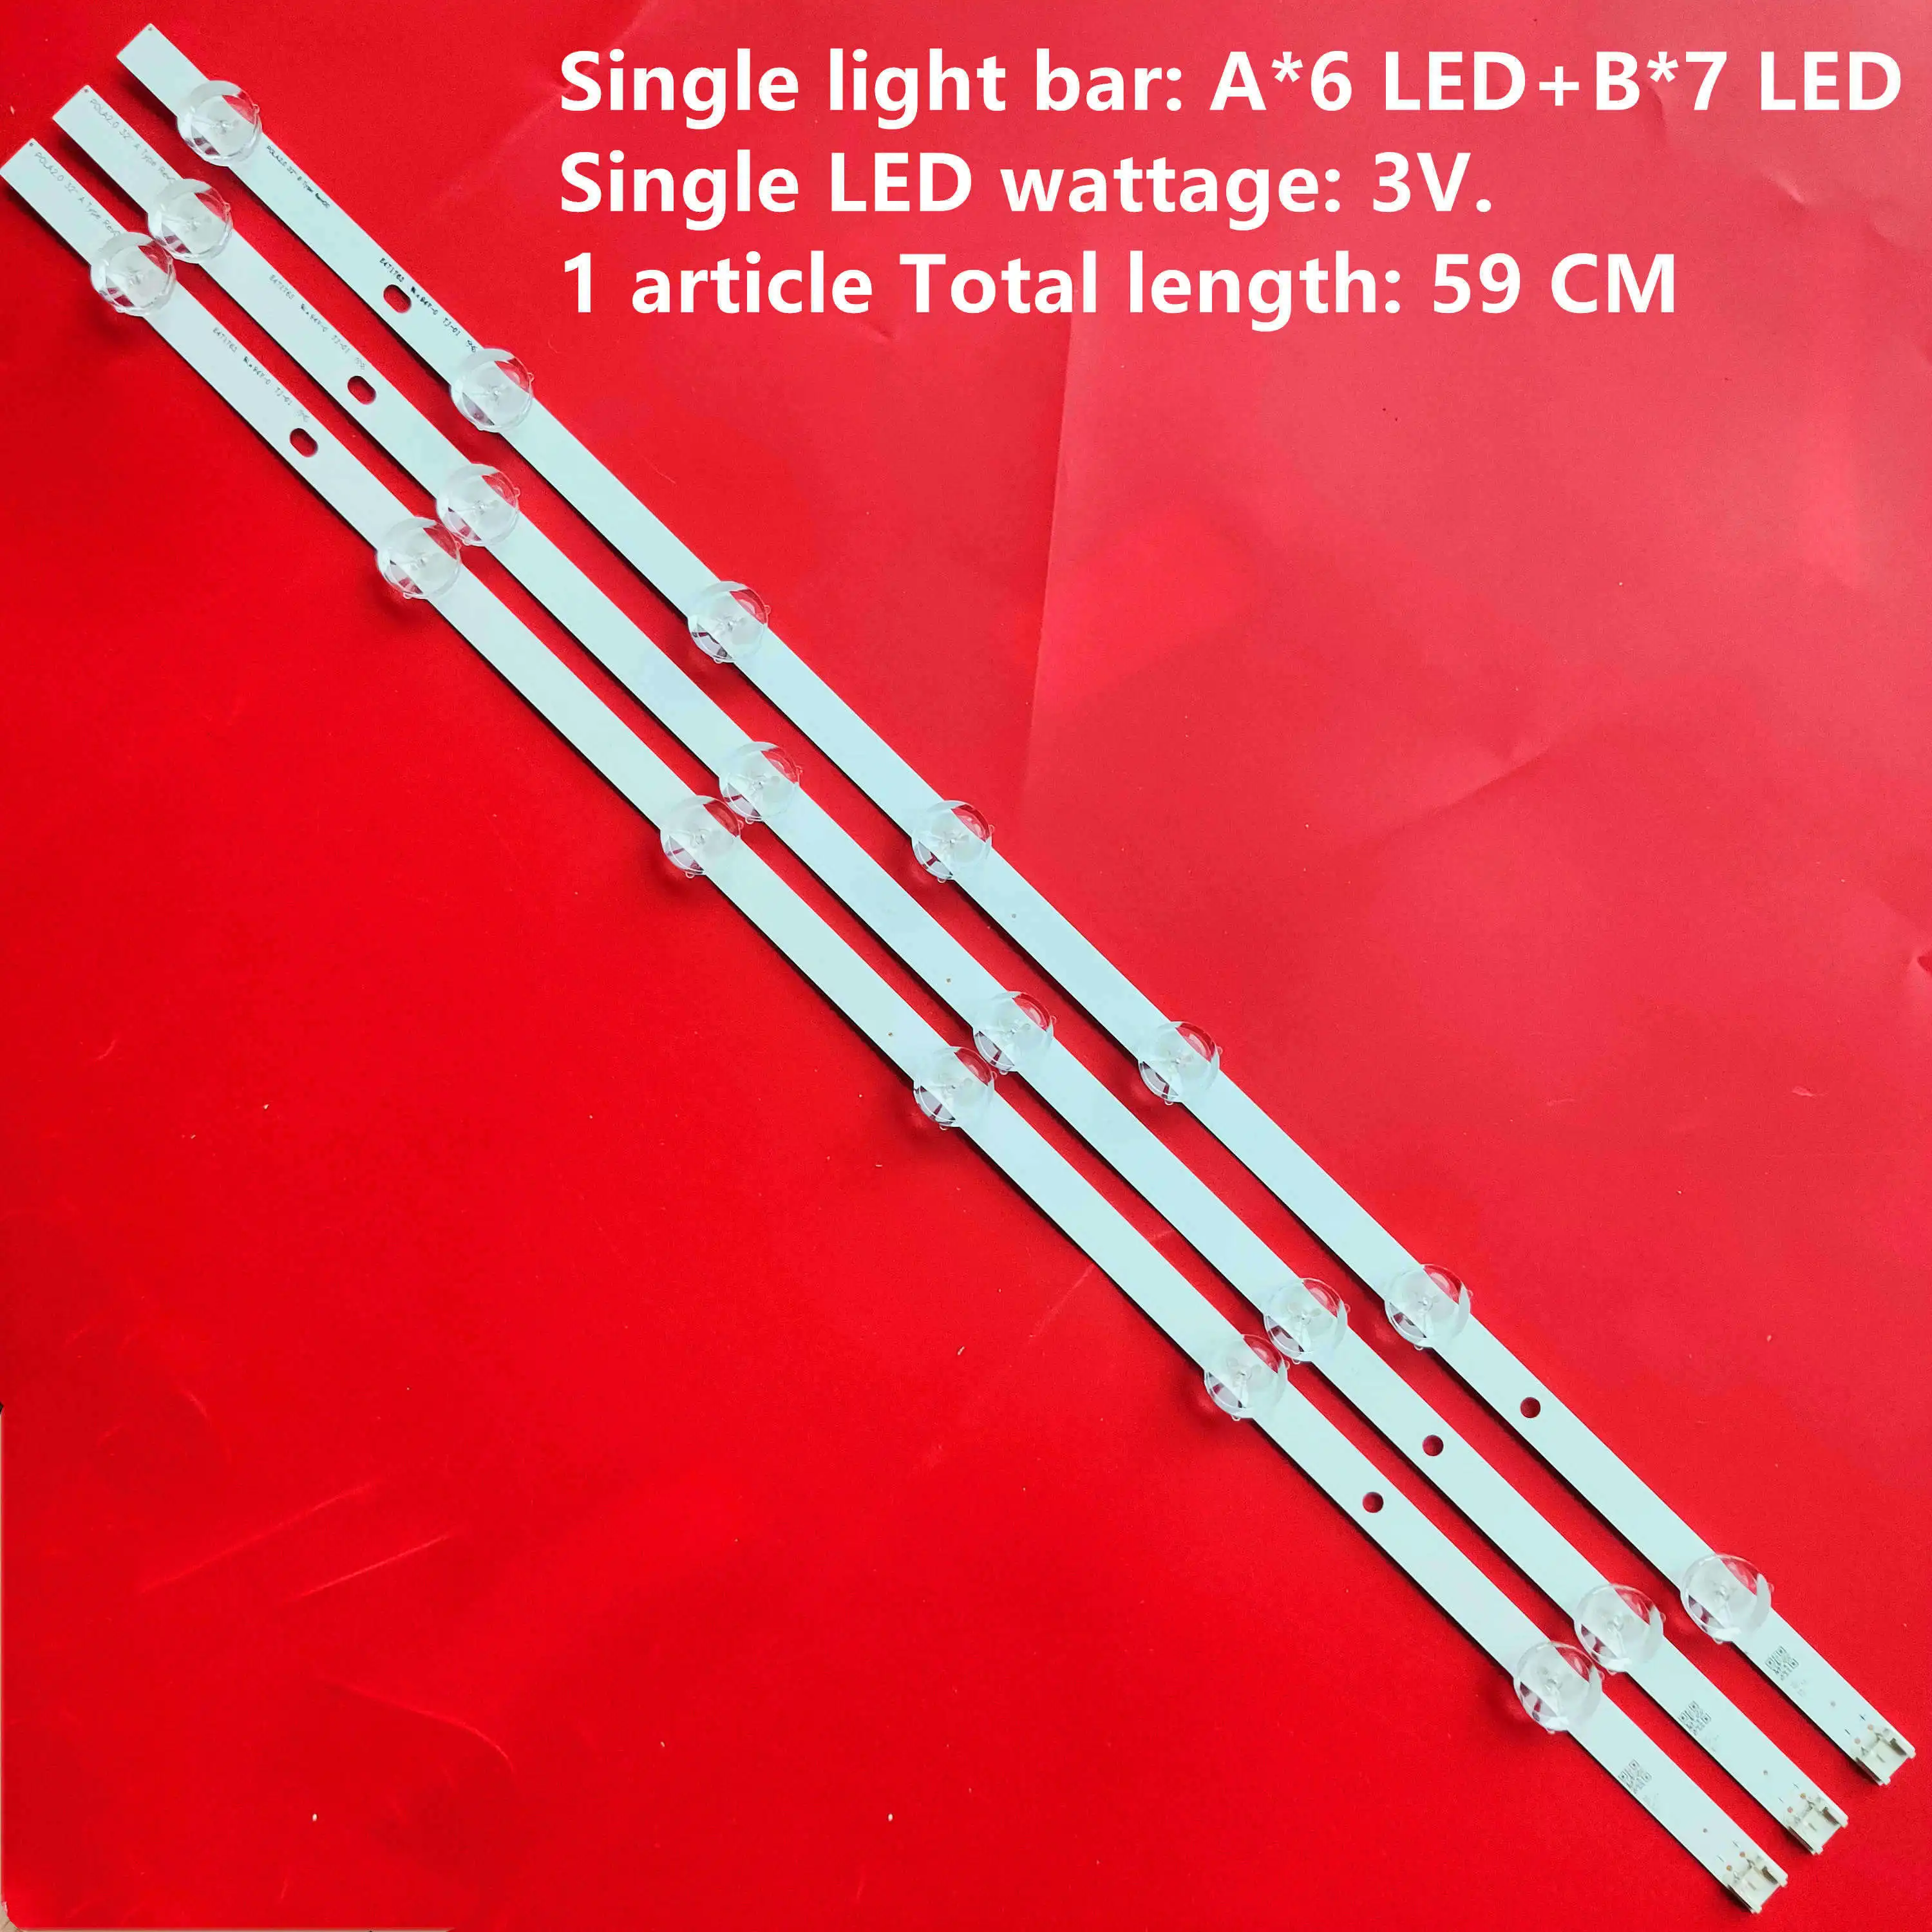 New18pcs 6/7LED 590mmAluminum LED osvetlitvijo bar združljiv za LG TV 32LN5100 32LN545B 32LN5180 Innotek POLA2.0 32 palčni A B vrsta